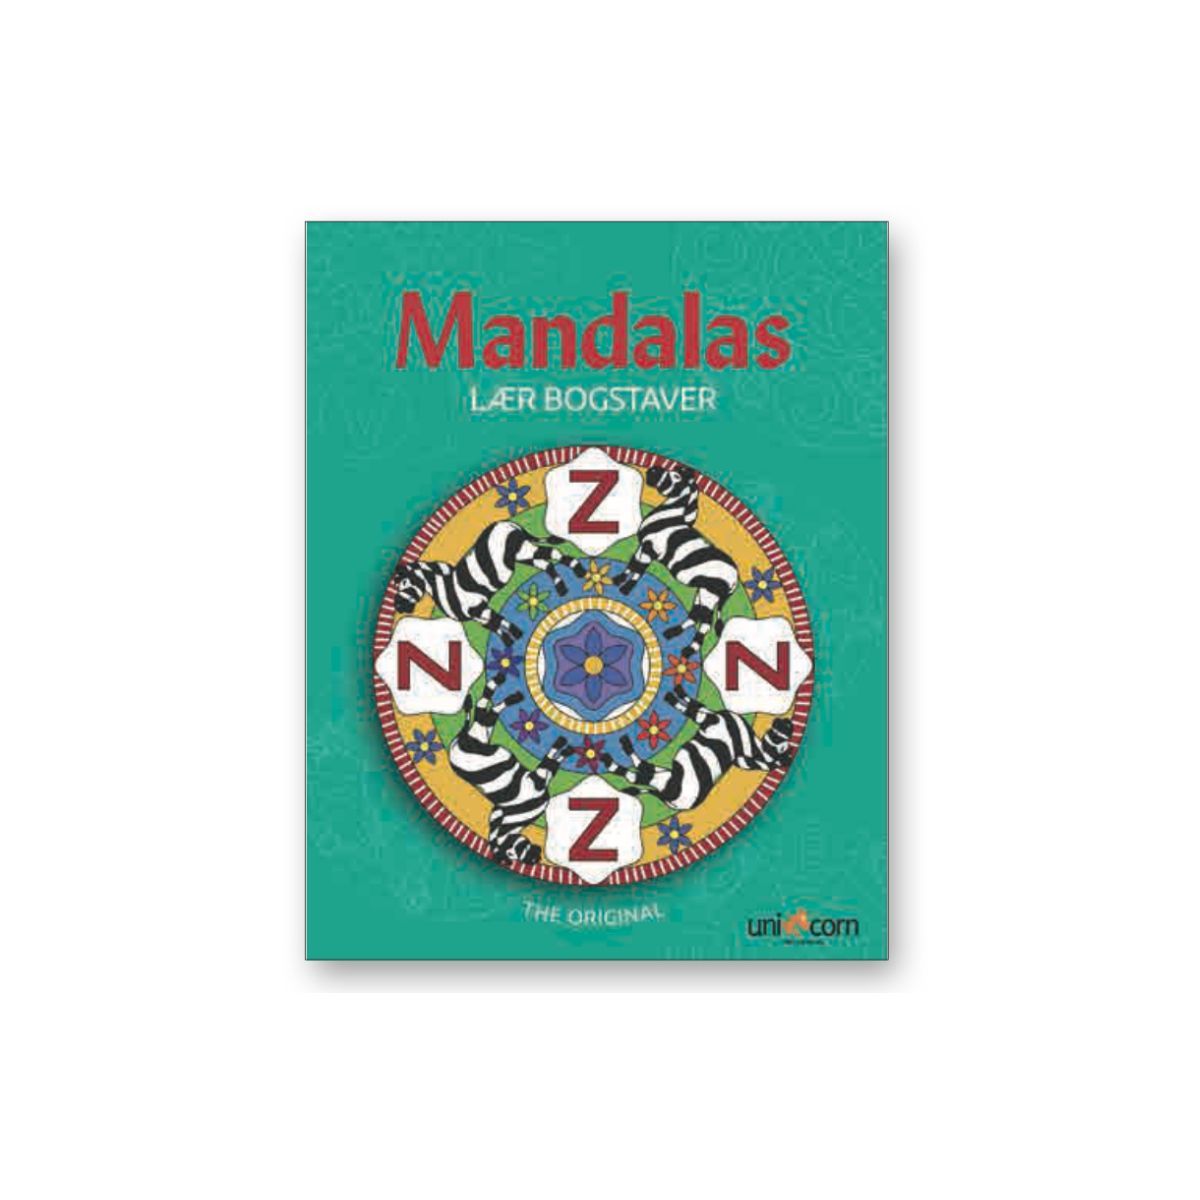 Mandala Lær bogstaverne at kende ved at tegne dem i mandala